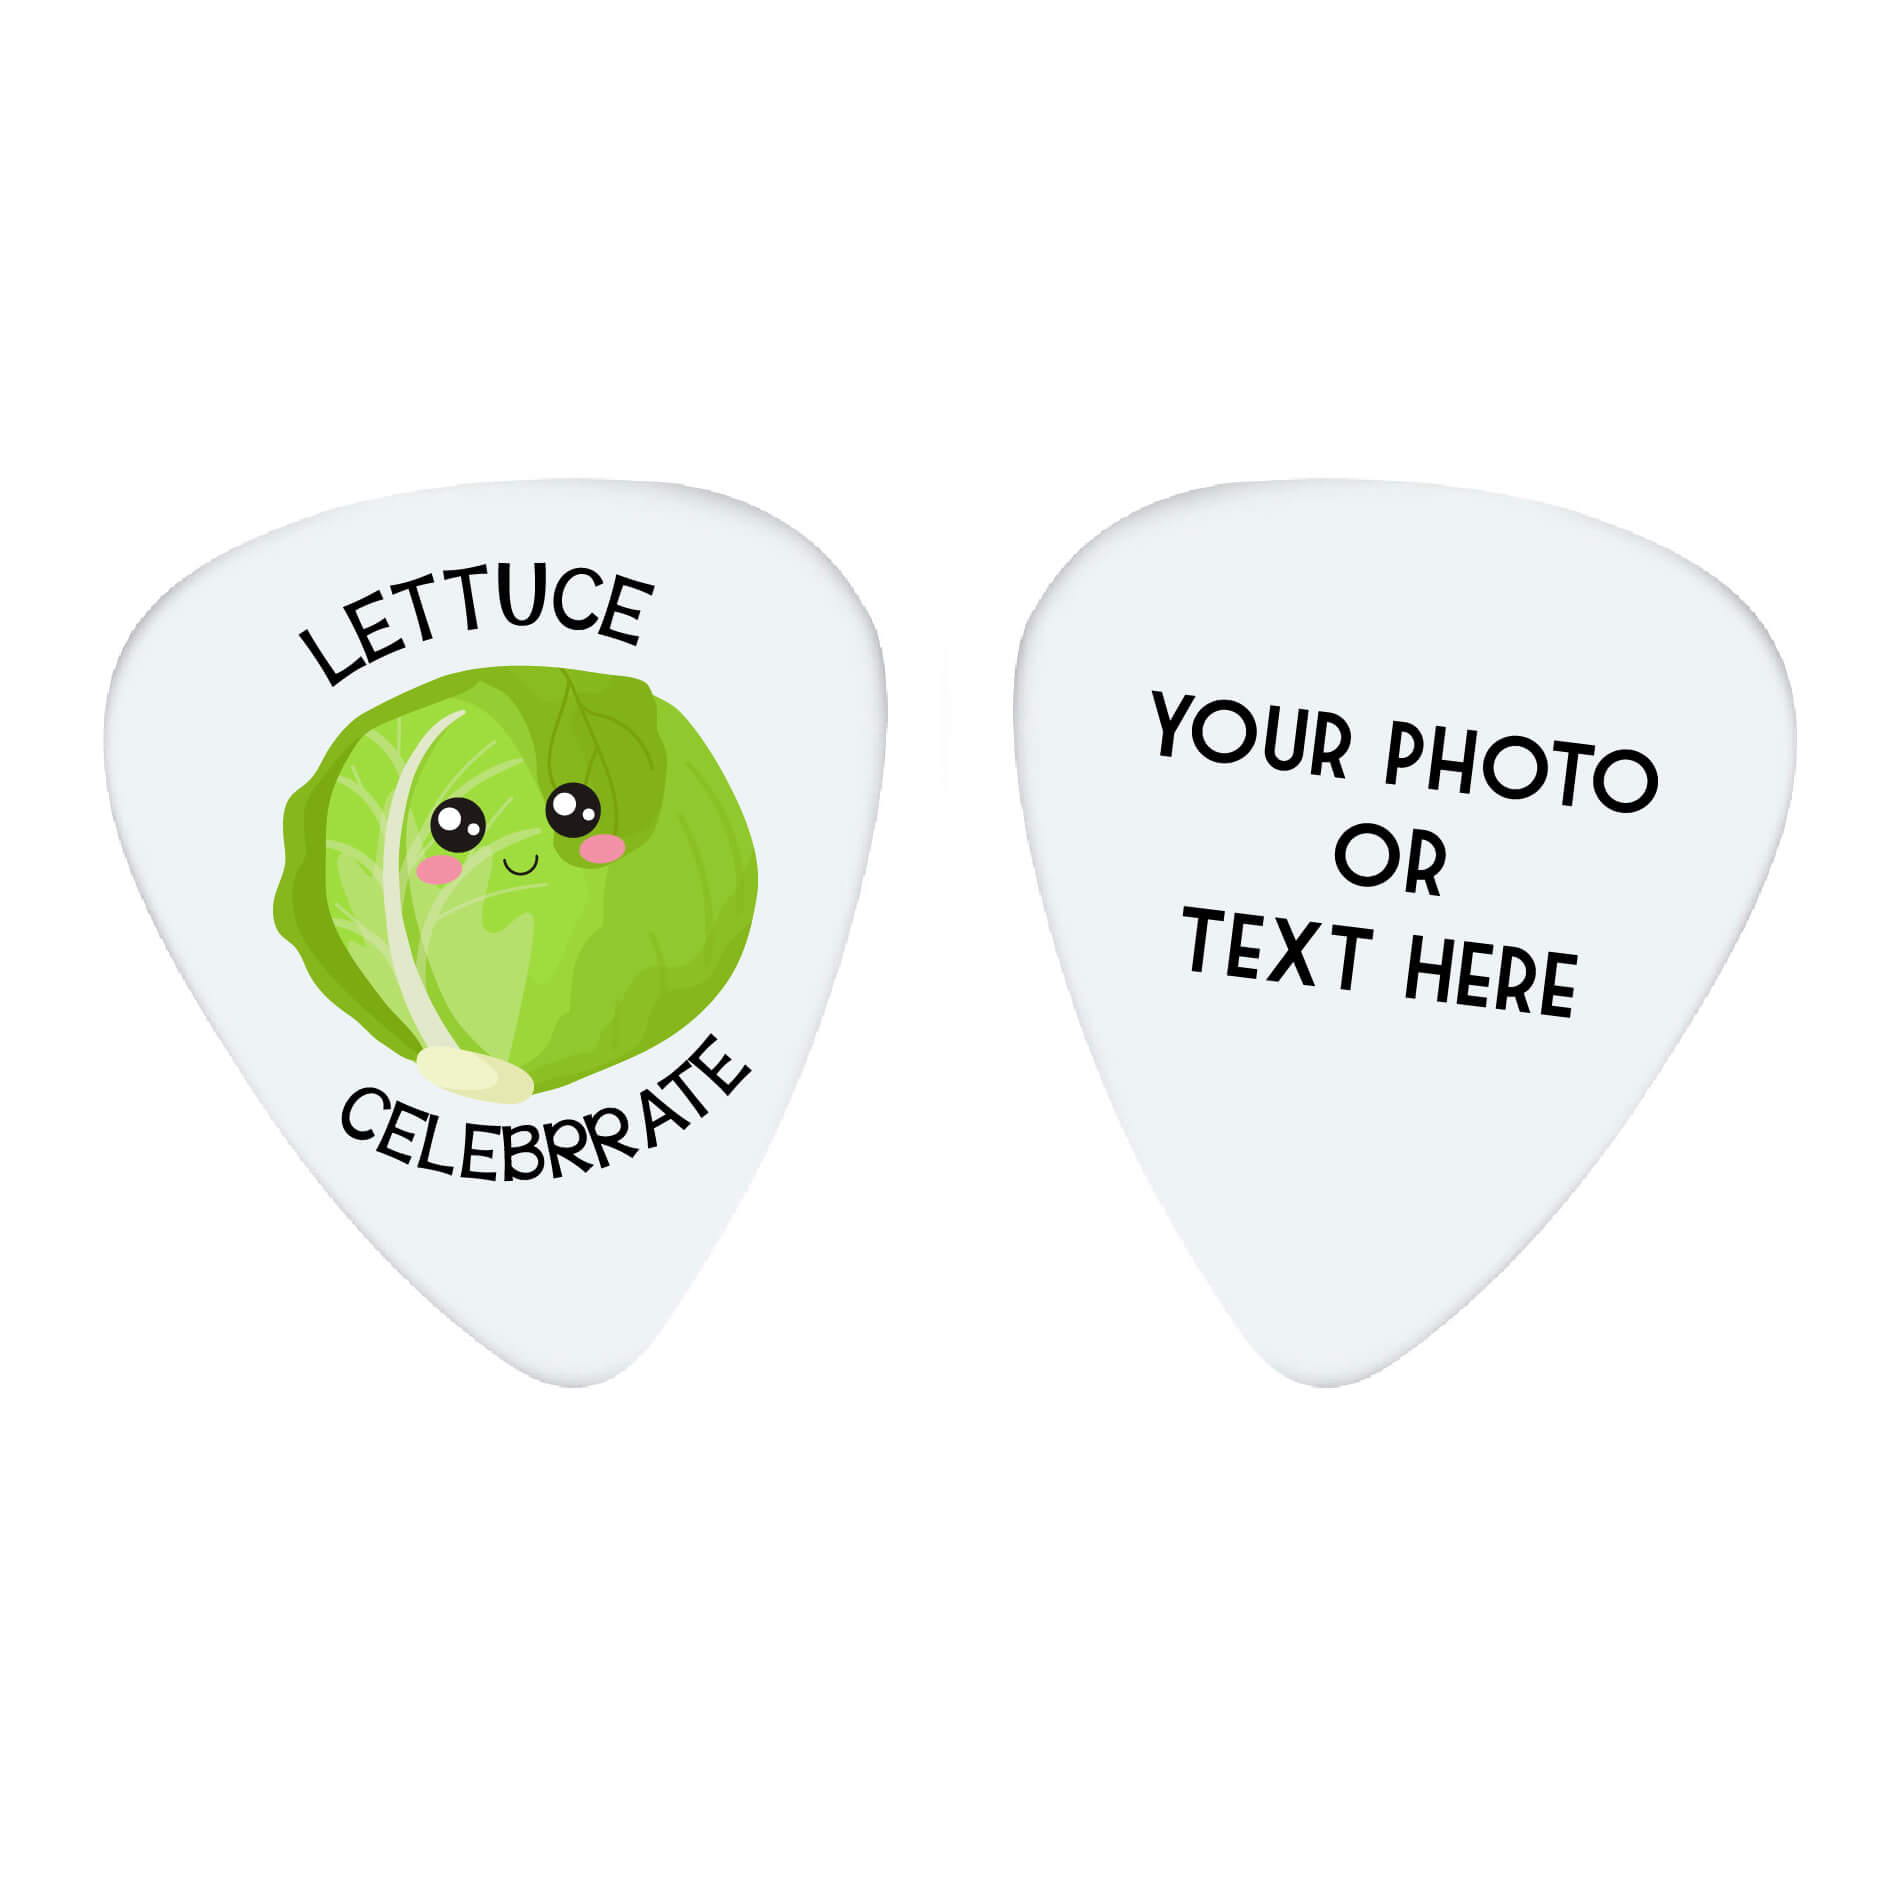 Lettuce Celebrate Custom Guitar Pick